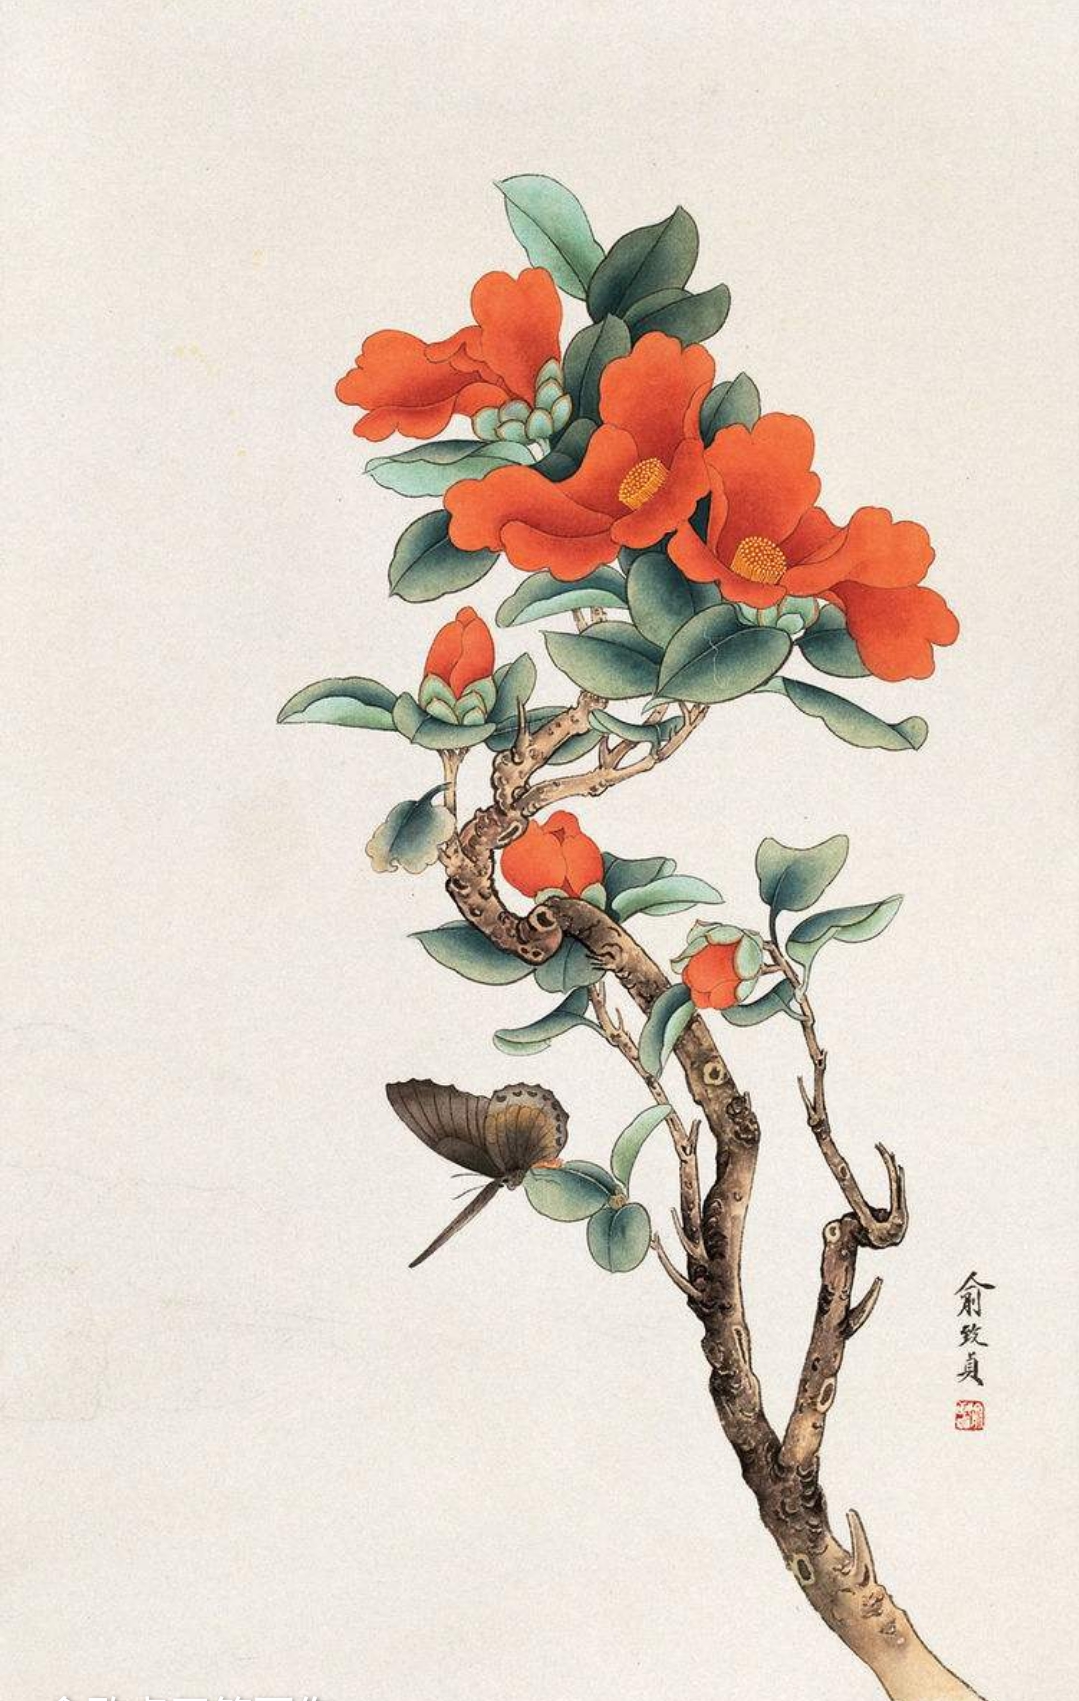 中国著名工笔画女画家俞致贞花鸟作品赏析